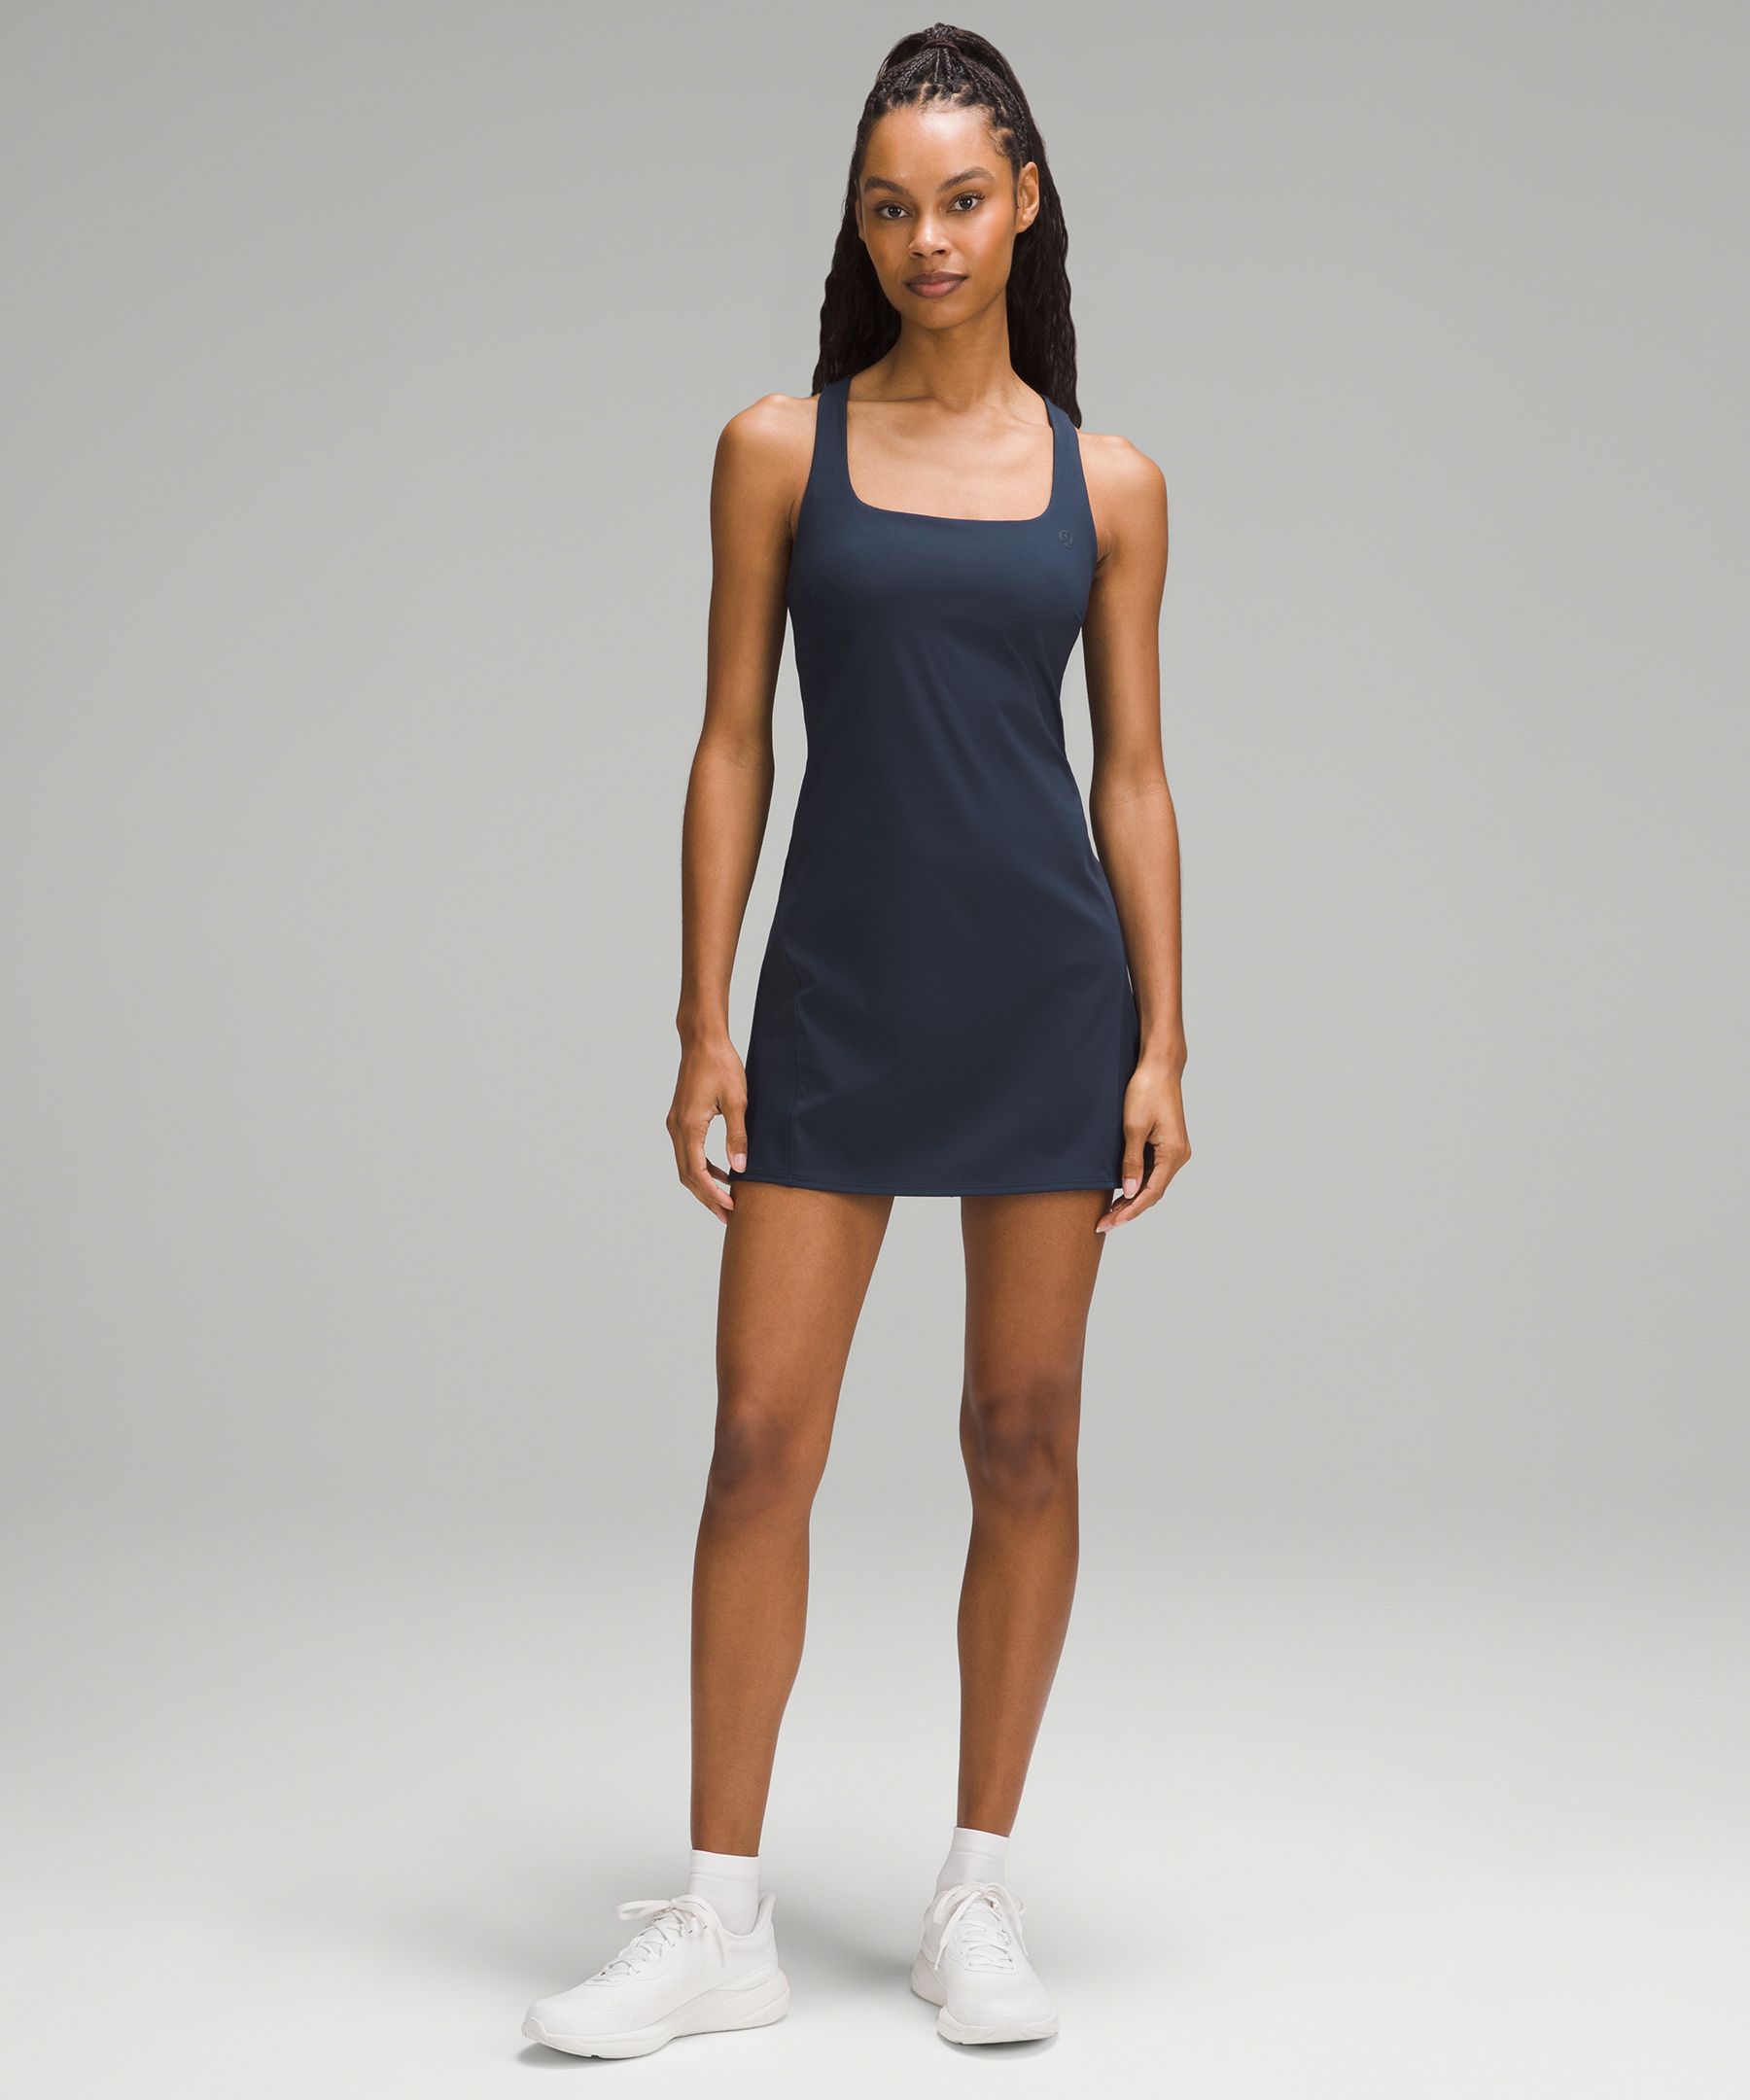 Lululemon Women Everlux Short lined Tennis Tank Dress 6 – Tennis ProSport